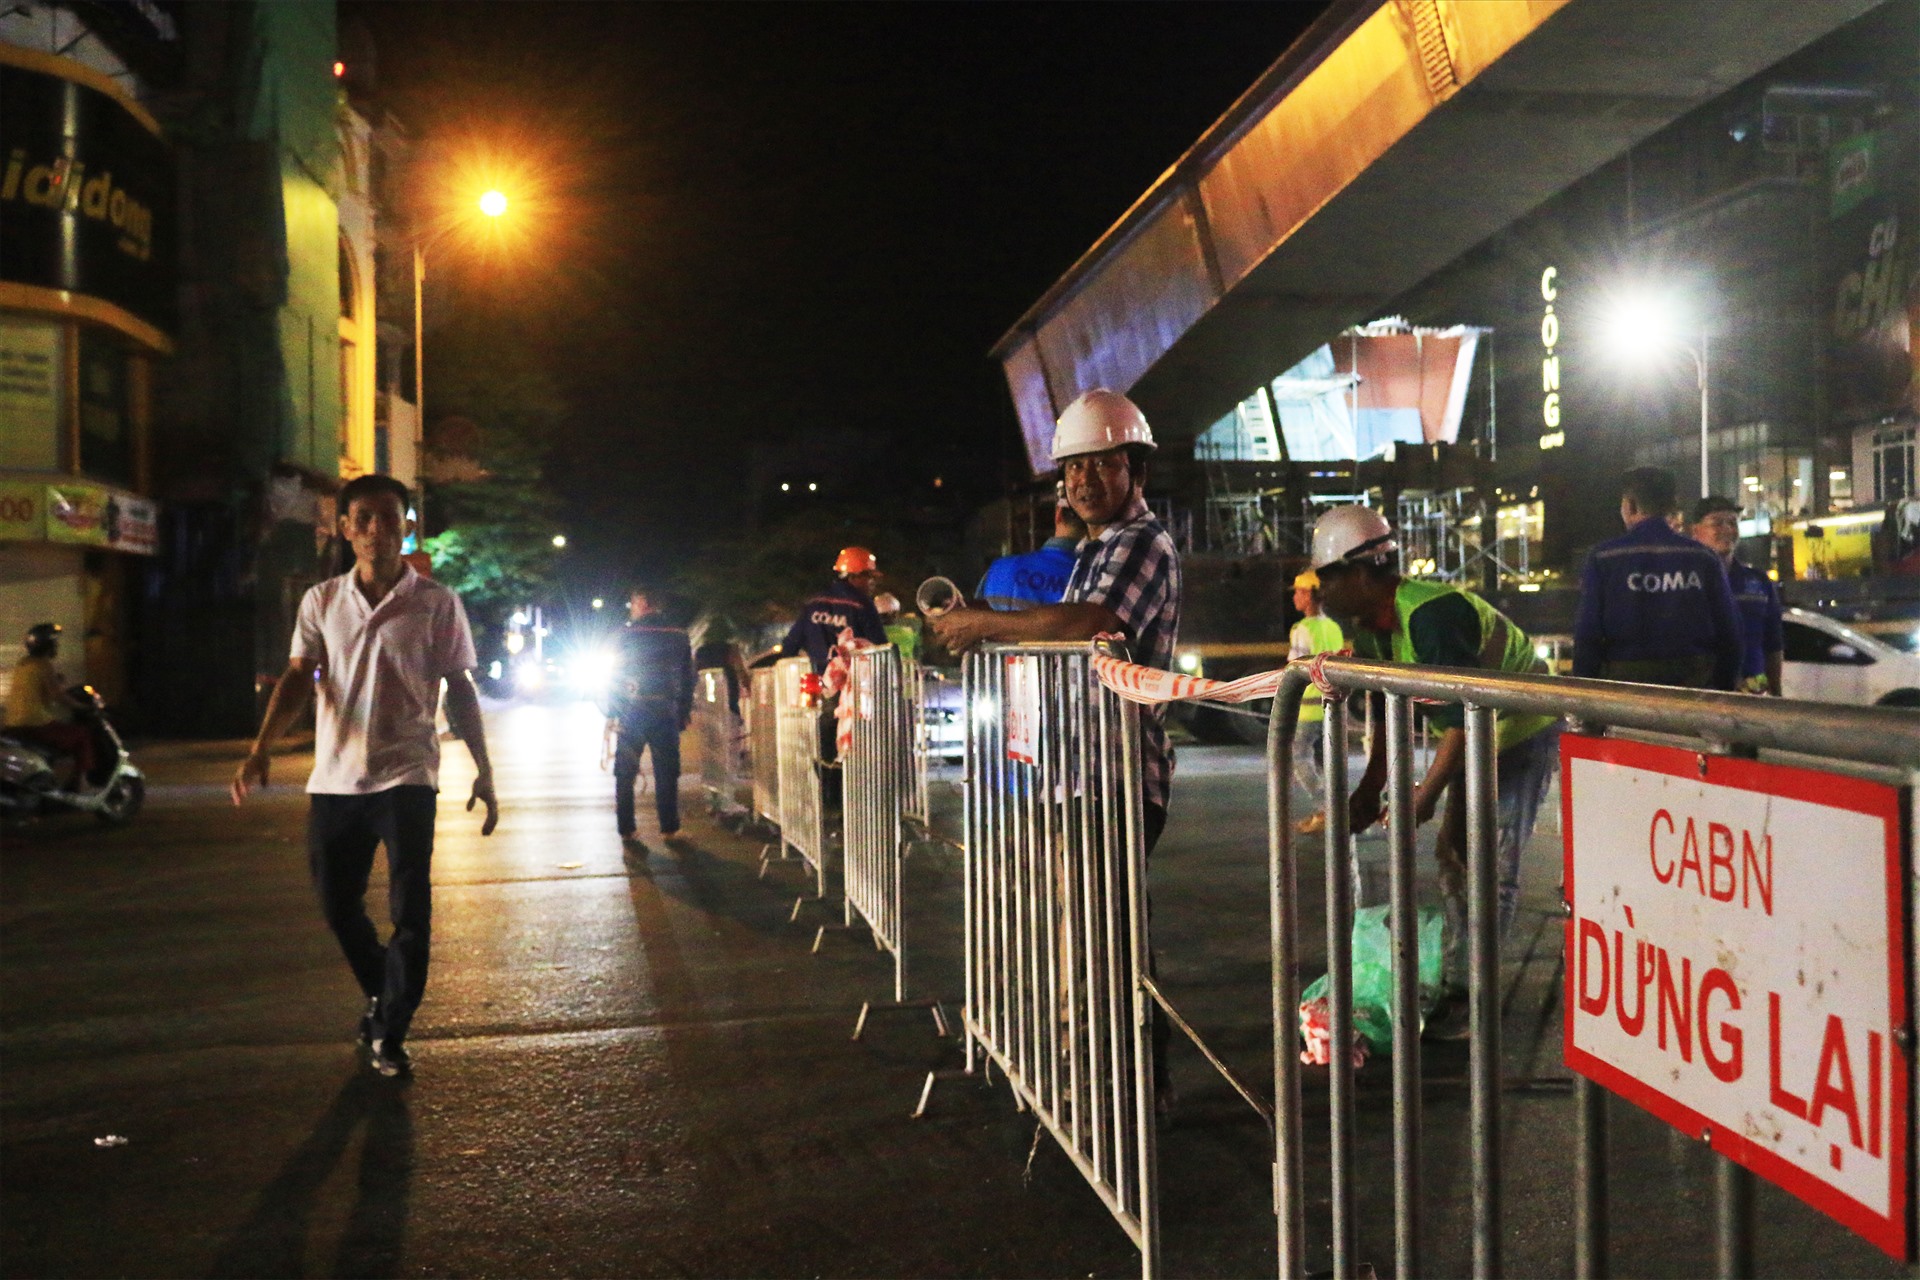 Đúng 23h đêm 23.7, các đoạn đường quanh khu vực thi công cầu vượt Nguyễn Văn Cừ - Hồng Tiến (quận Long Biên) được rào chắn, chăng dây, cấm các phương tiện lưu thông qua khu vực này. Lực lượng chức năng cũng có mặt để phân luồng, điều tiết giao thông trong thời gian này. 